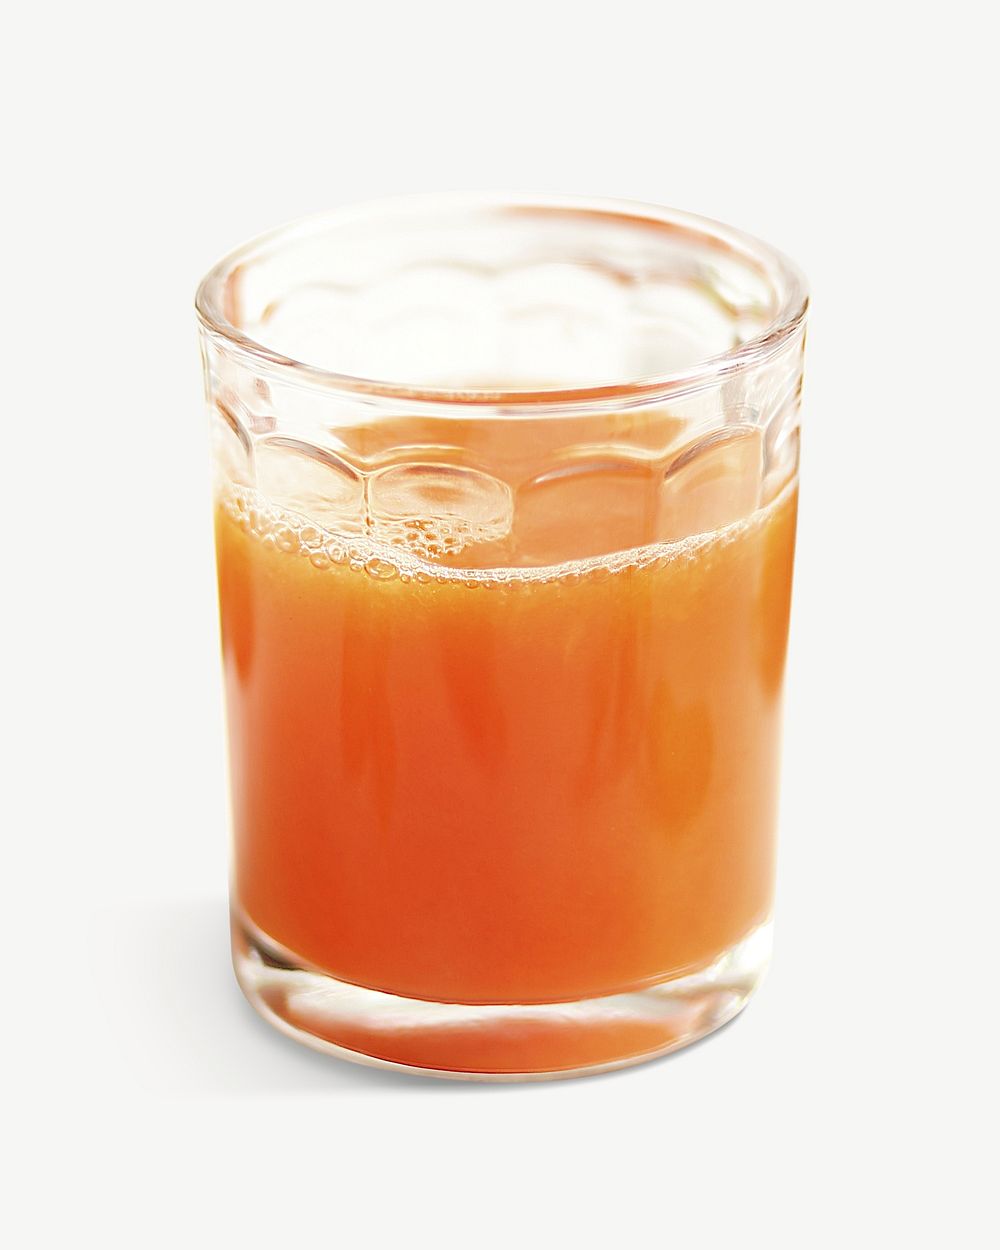 Orange juice collage element isolated image